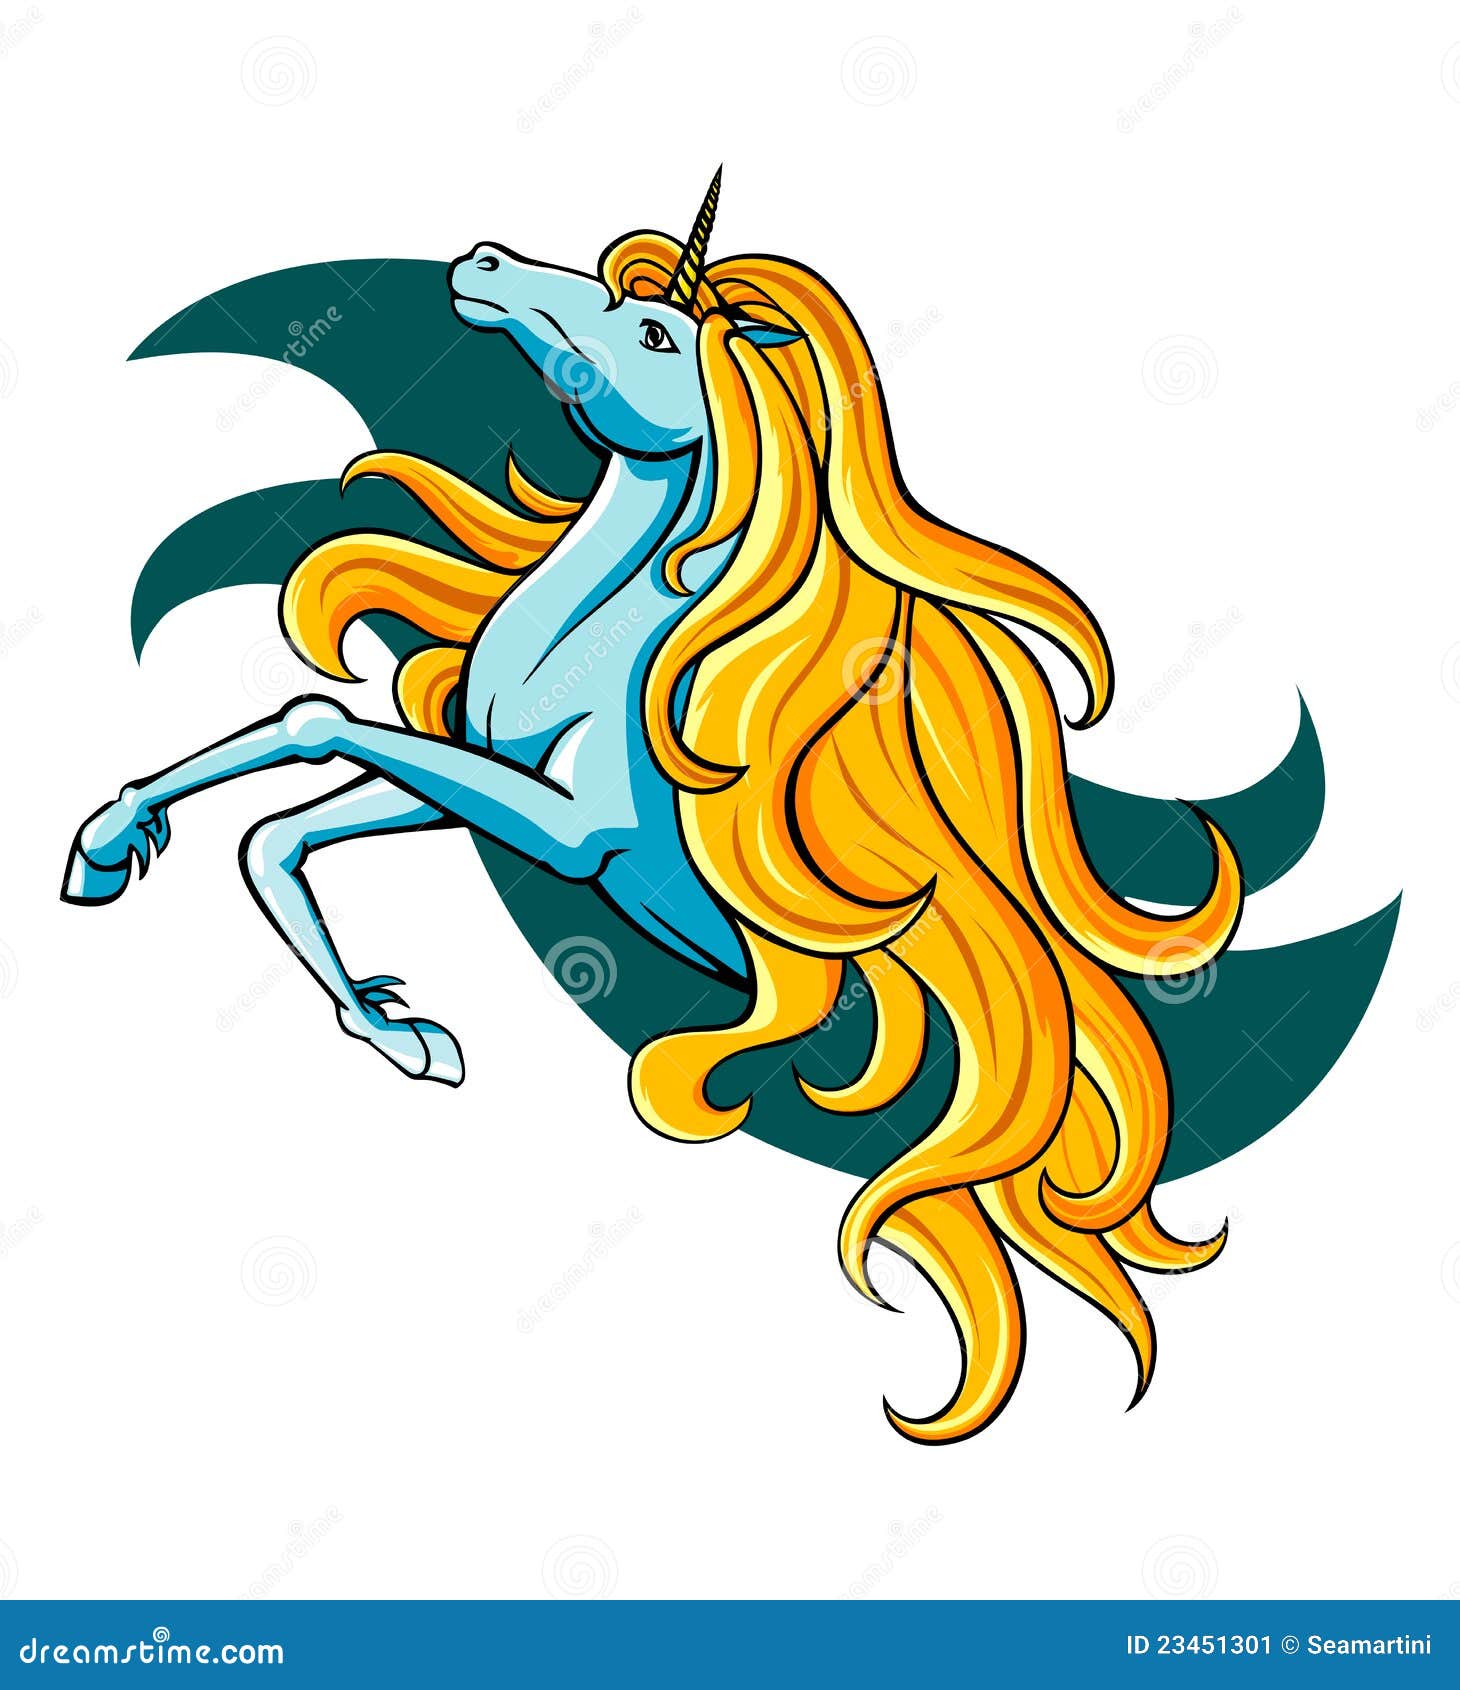 Fantasy unicorn stock vector. Illustration of mythology - 23451301